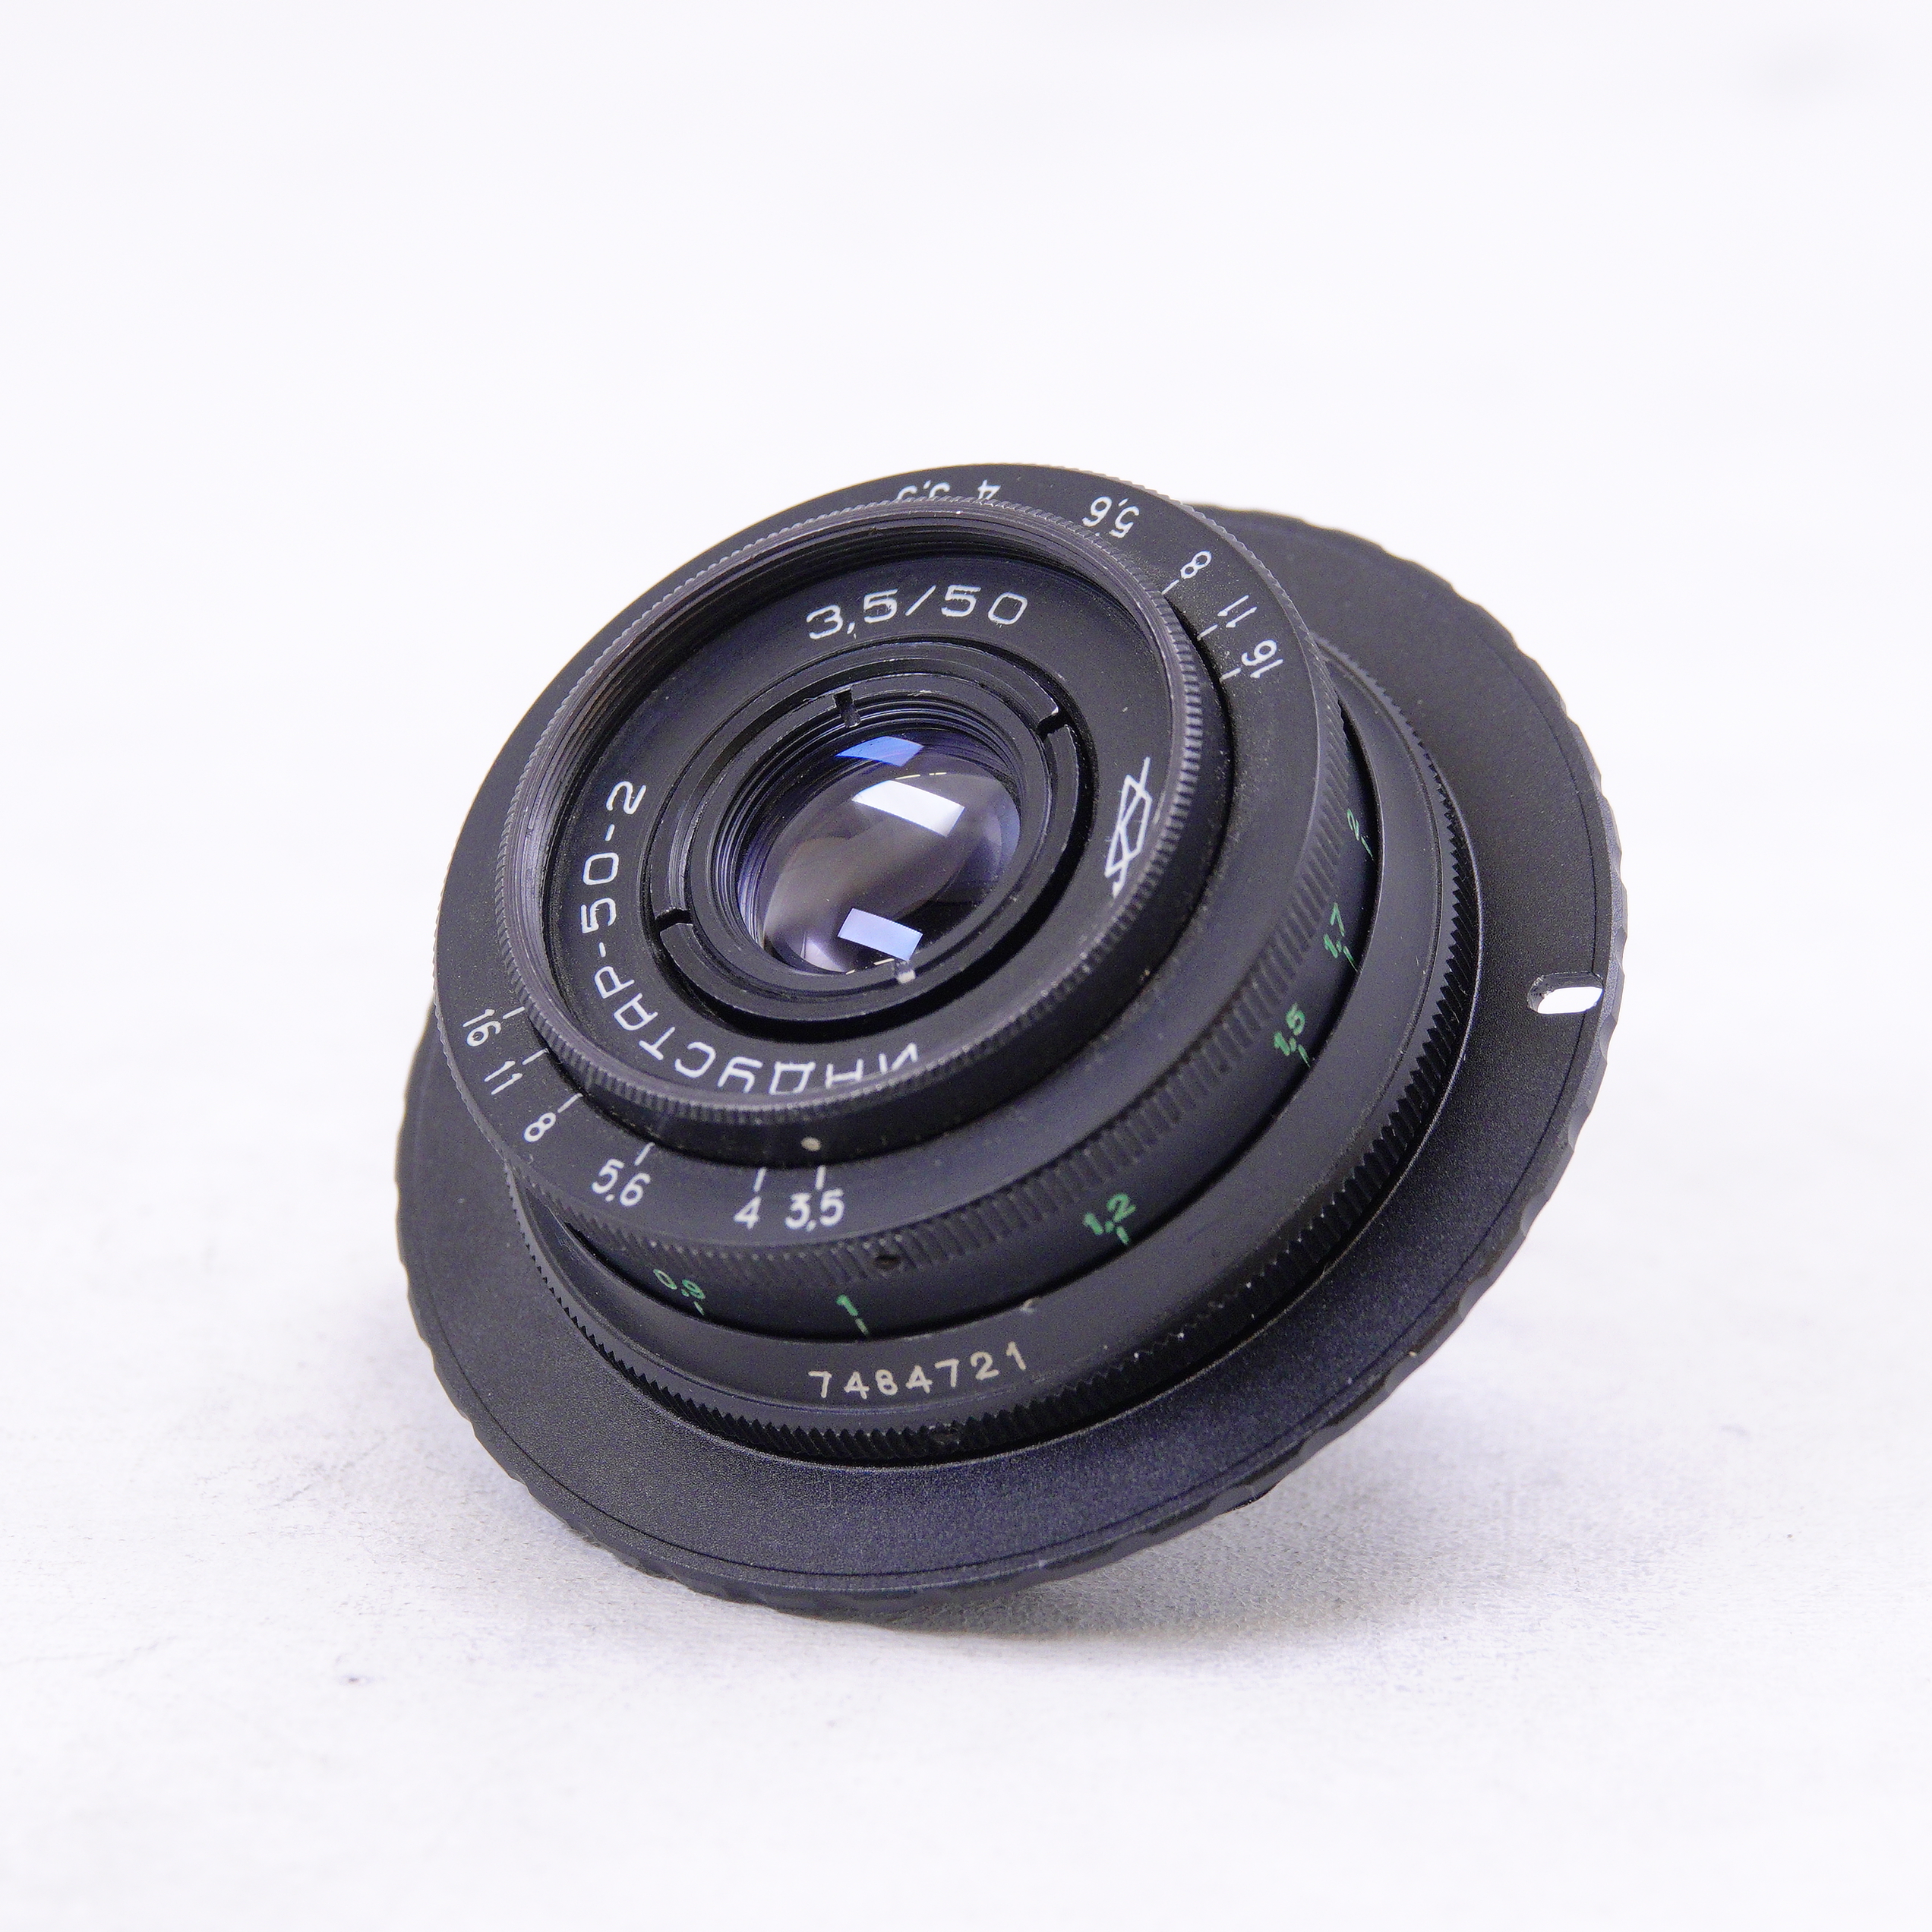 Lente Industar 50-2 f3.5 con adaptador M42 a Canon EF - Usado